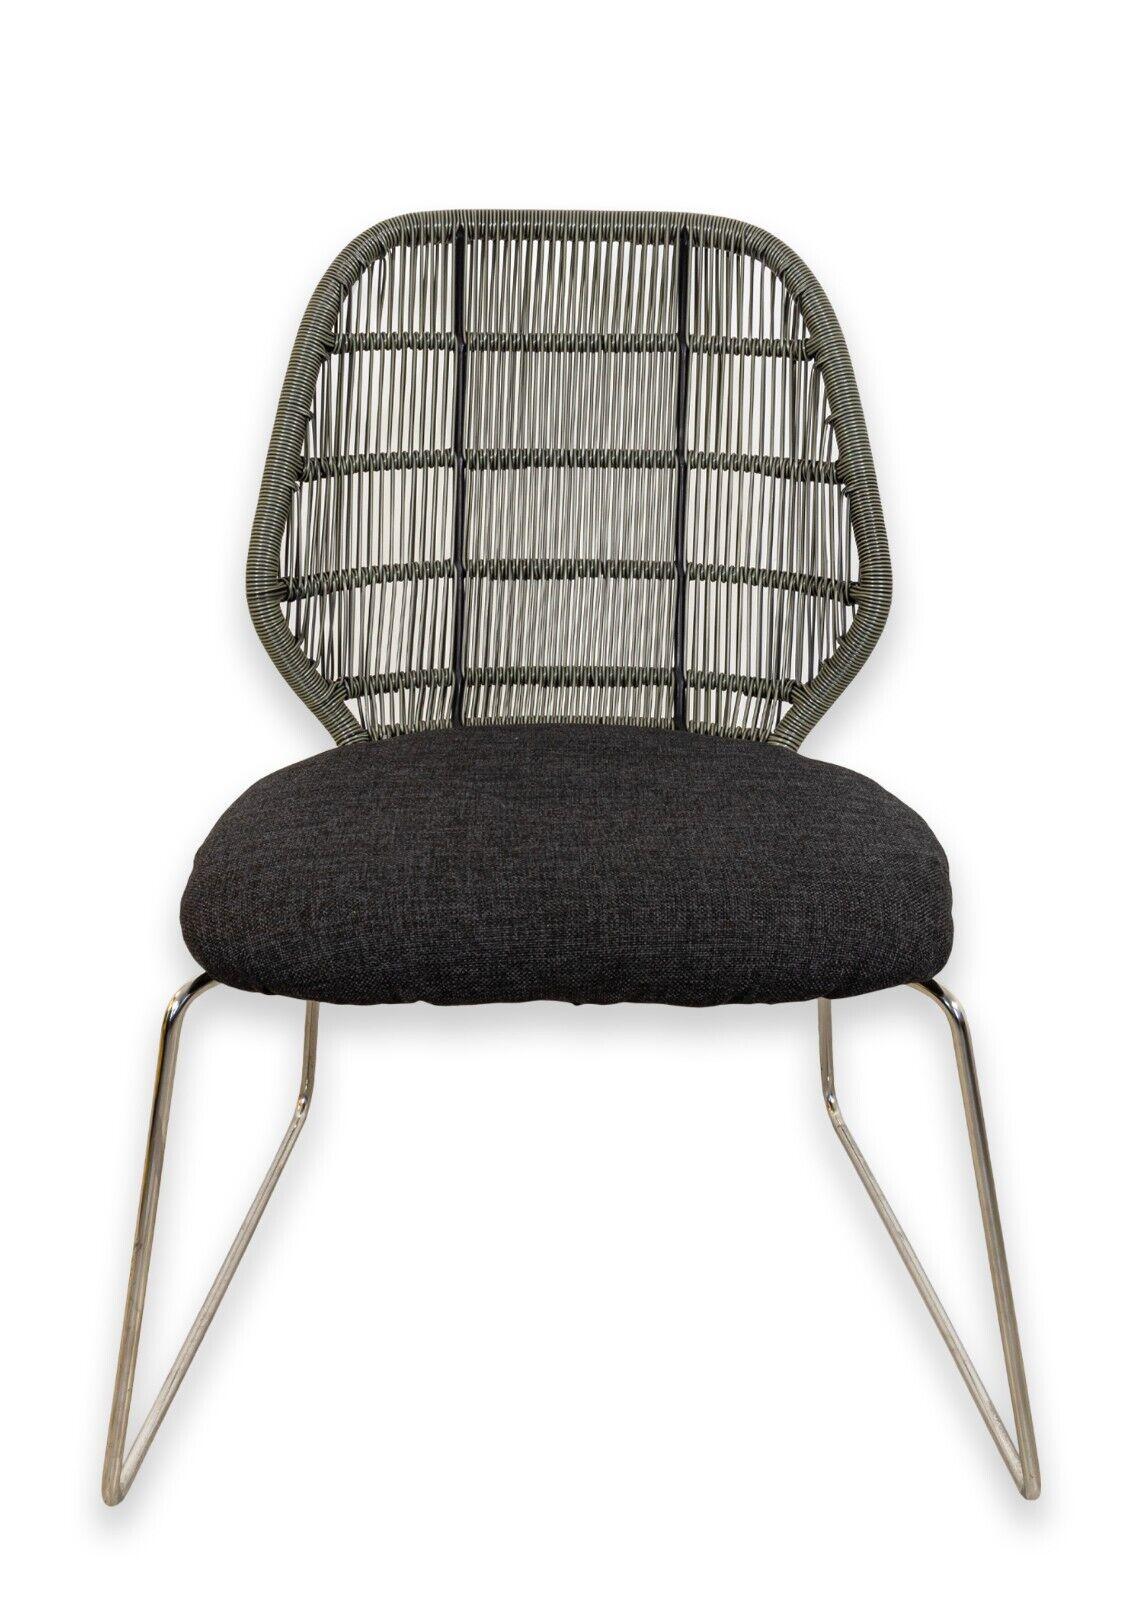 Une paire de chaises à crinoline et en acier inoxydable de B&B Italia. Un magnifique ensemble de chaises d'appoint présentant un design classique mais un ensemble unique de matériaux. Ces chaises sont dotées d'une structure en acier inoxydable, d'un